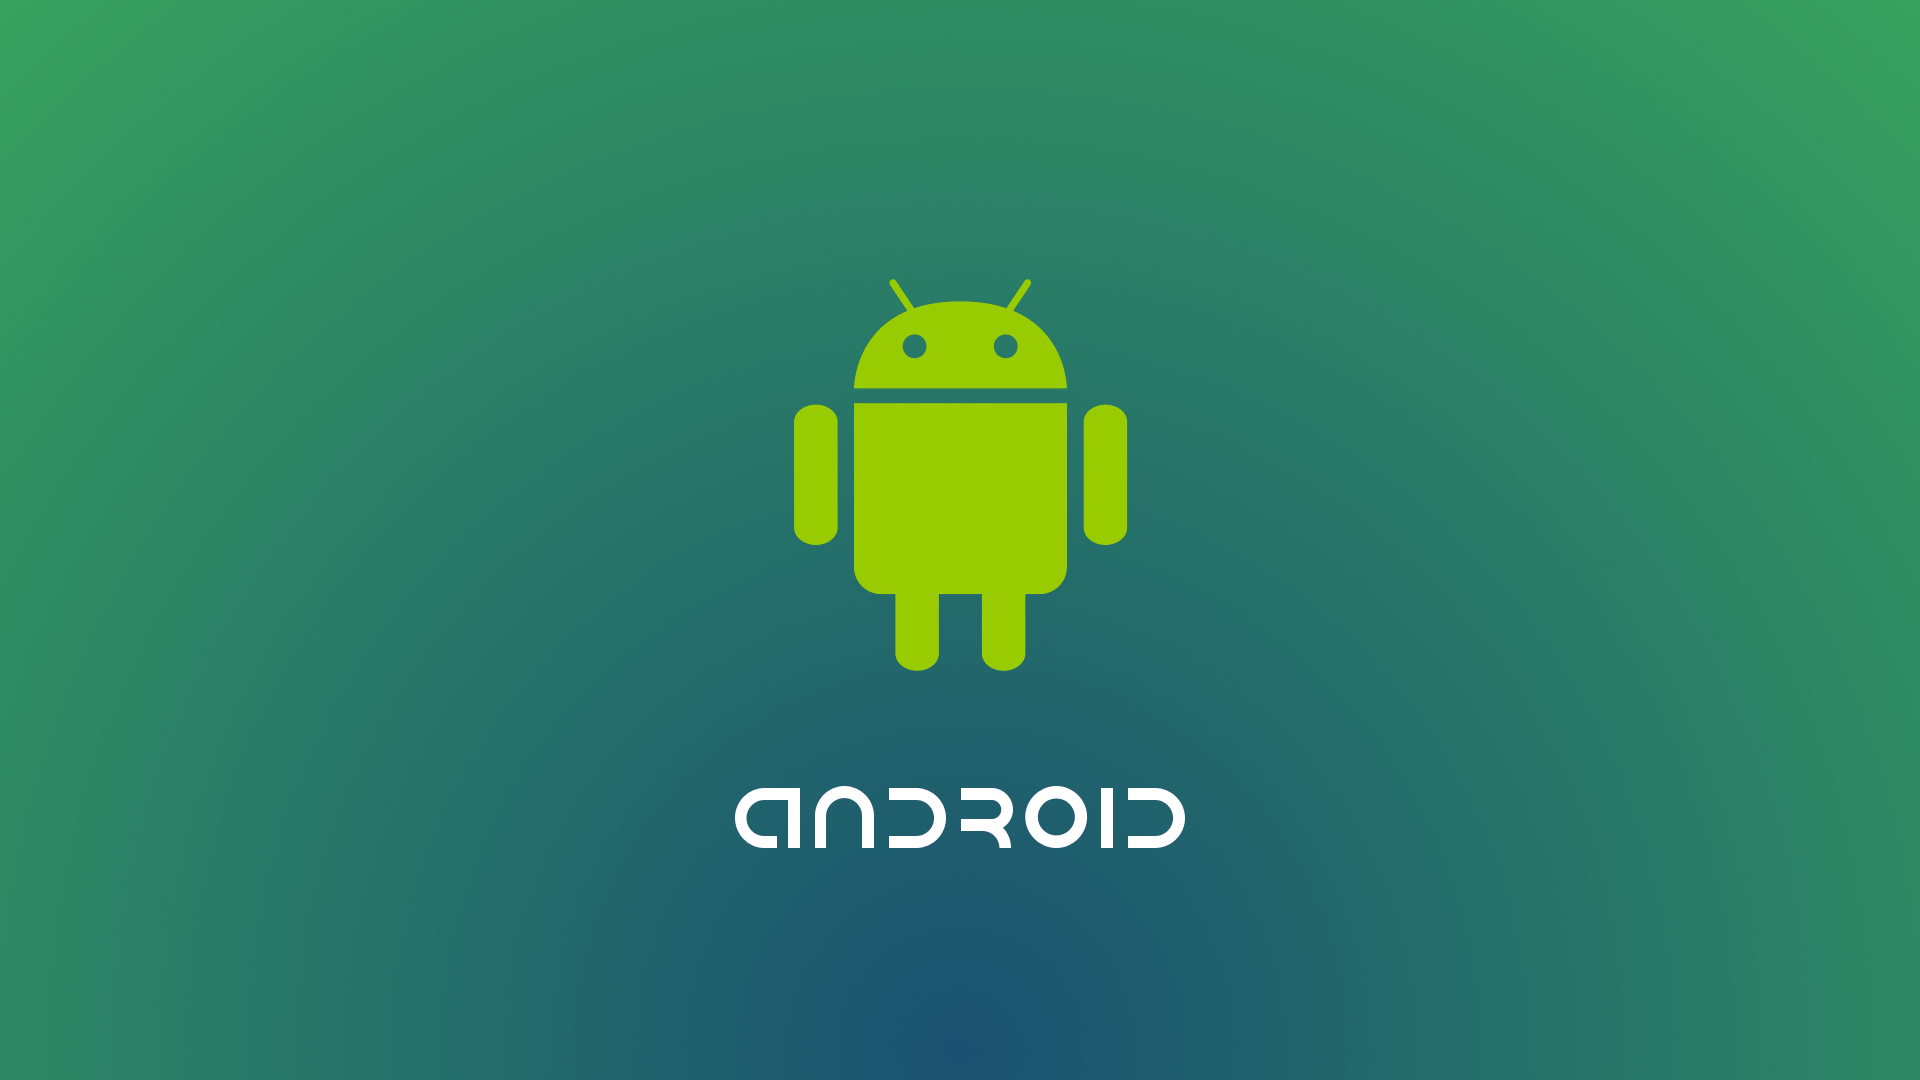 2018 年谷歌发布 Android9.0Pie 操作系统，9.1 版深度解析  第7张